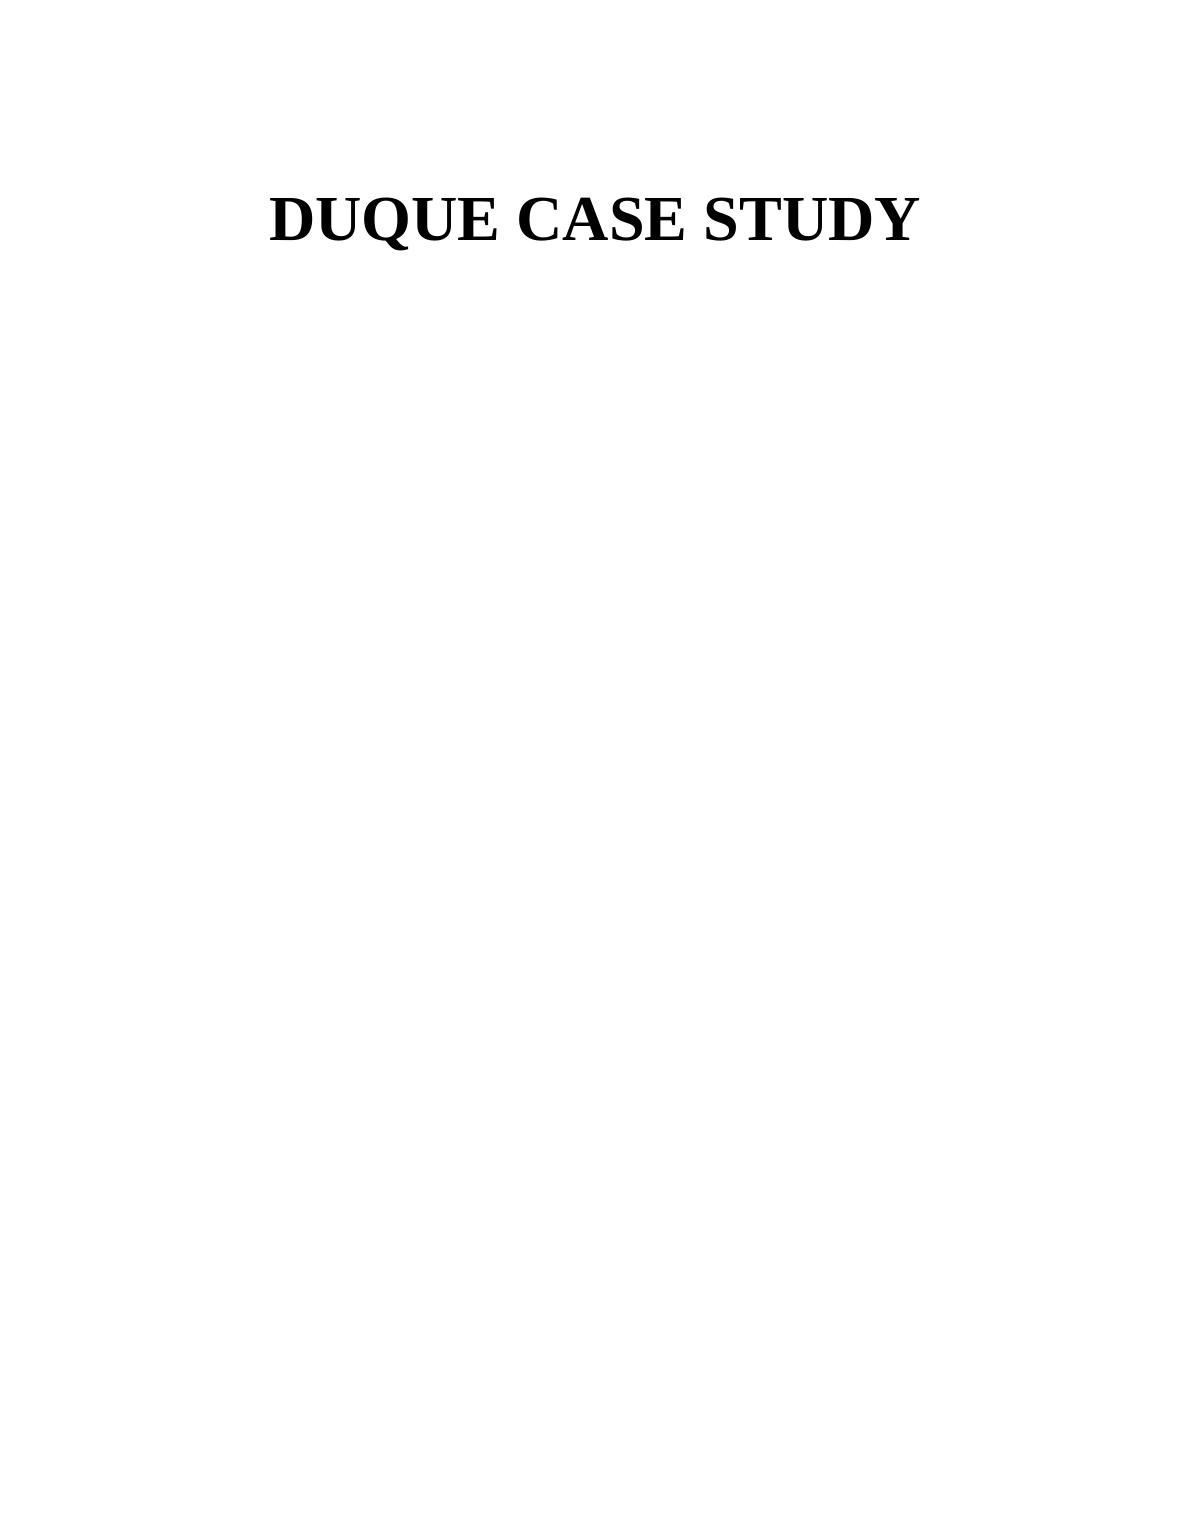 DUQUE CASE STUDY._1